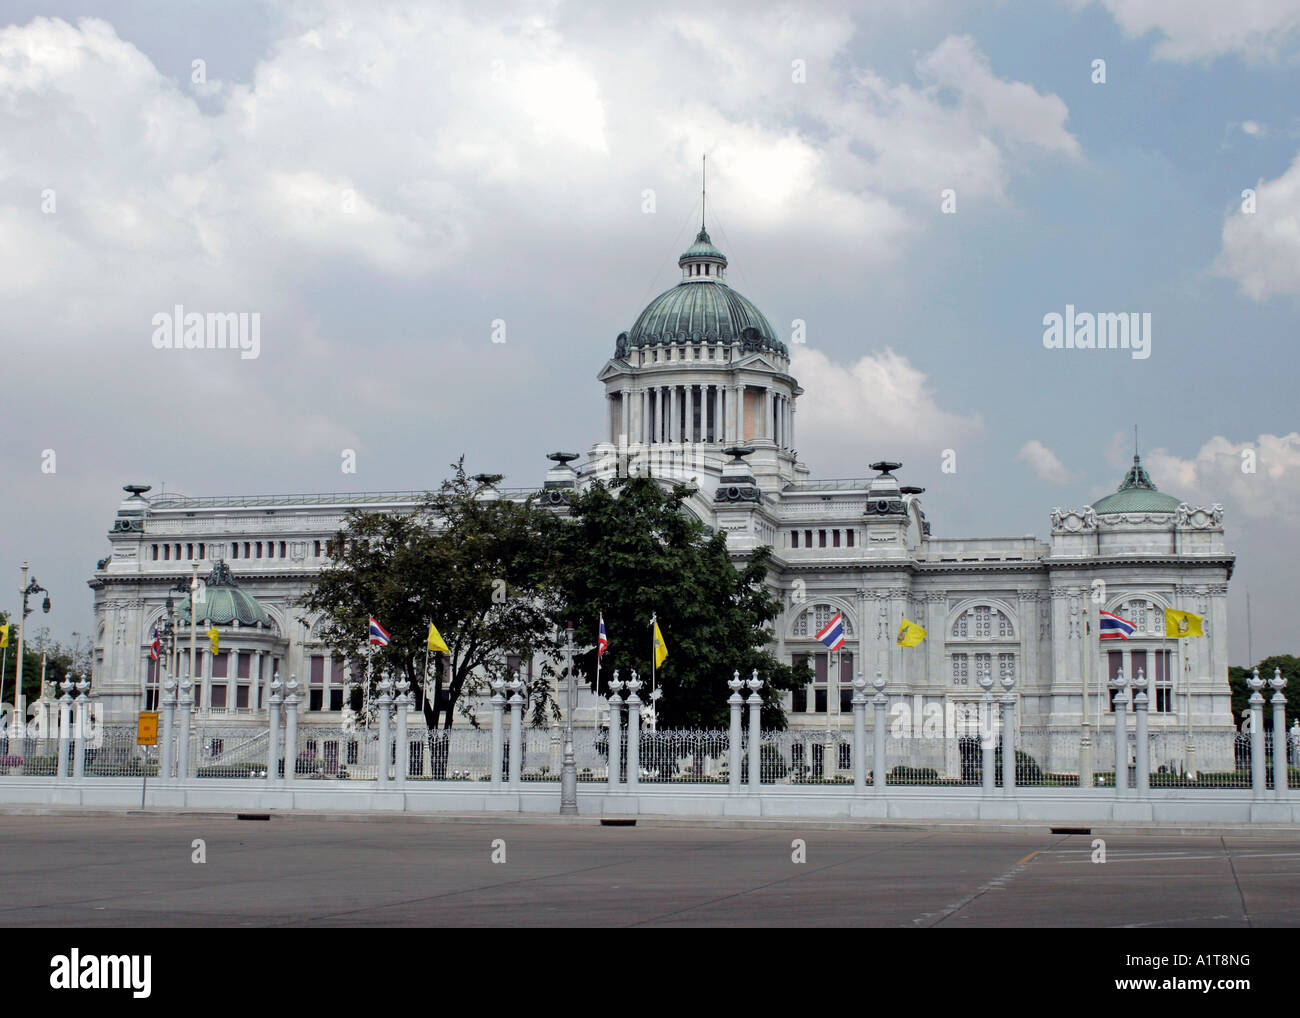 Palacio de Chitlada, hogar del Rey de Tailandia en Bangkok Foto de stock